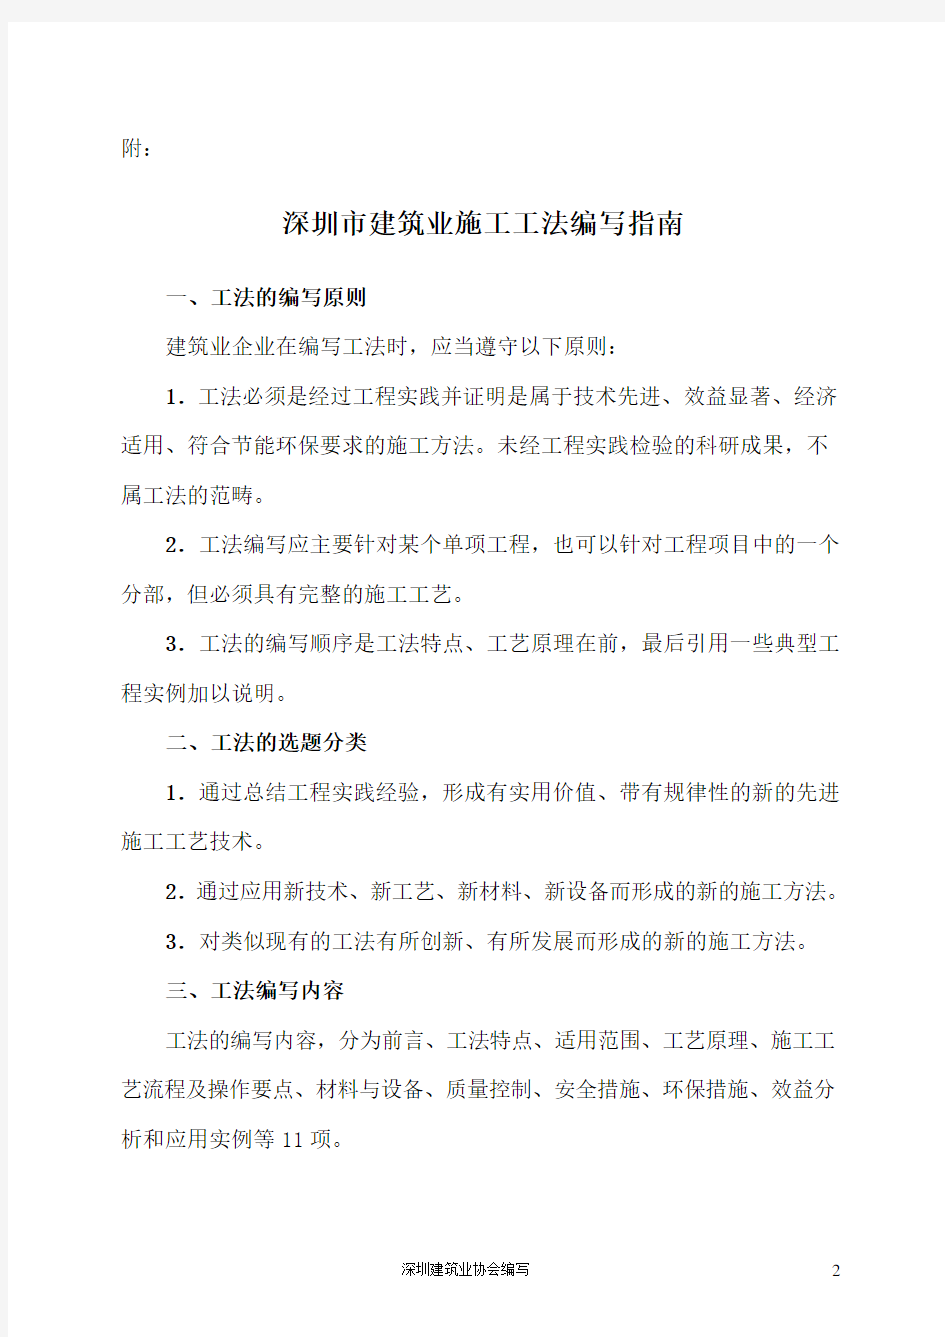 深圳建筑业施工工法编写指引-深圳建筑业协会